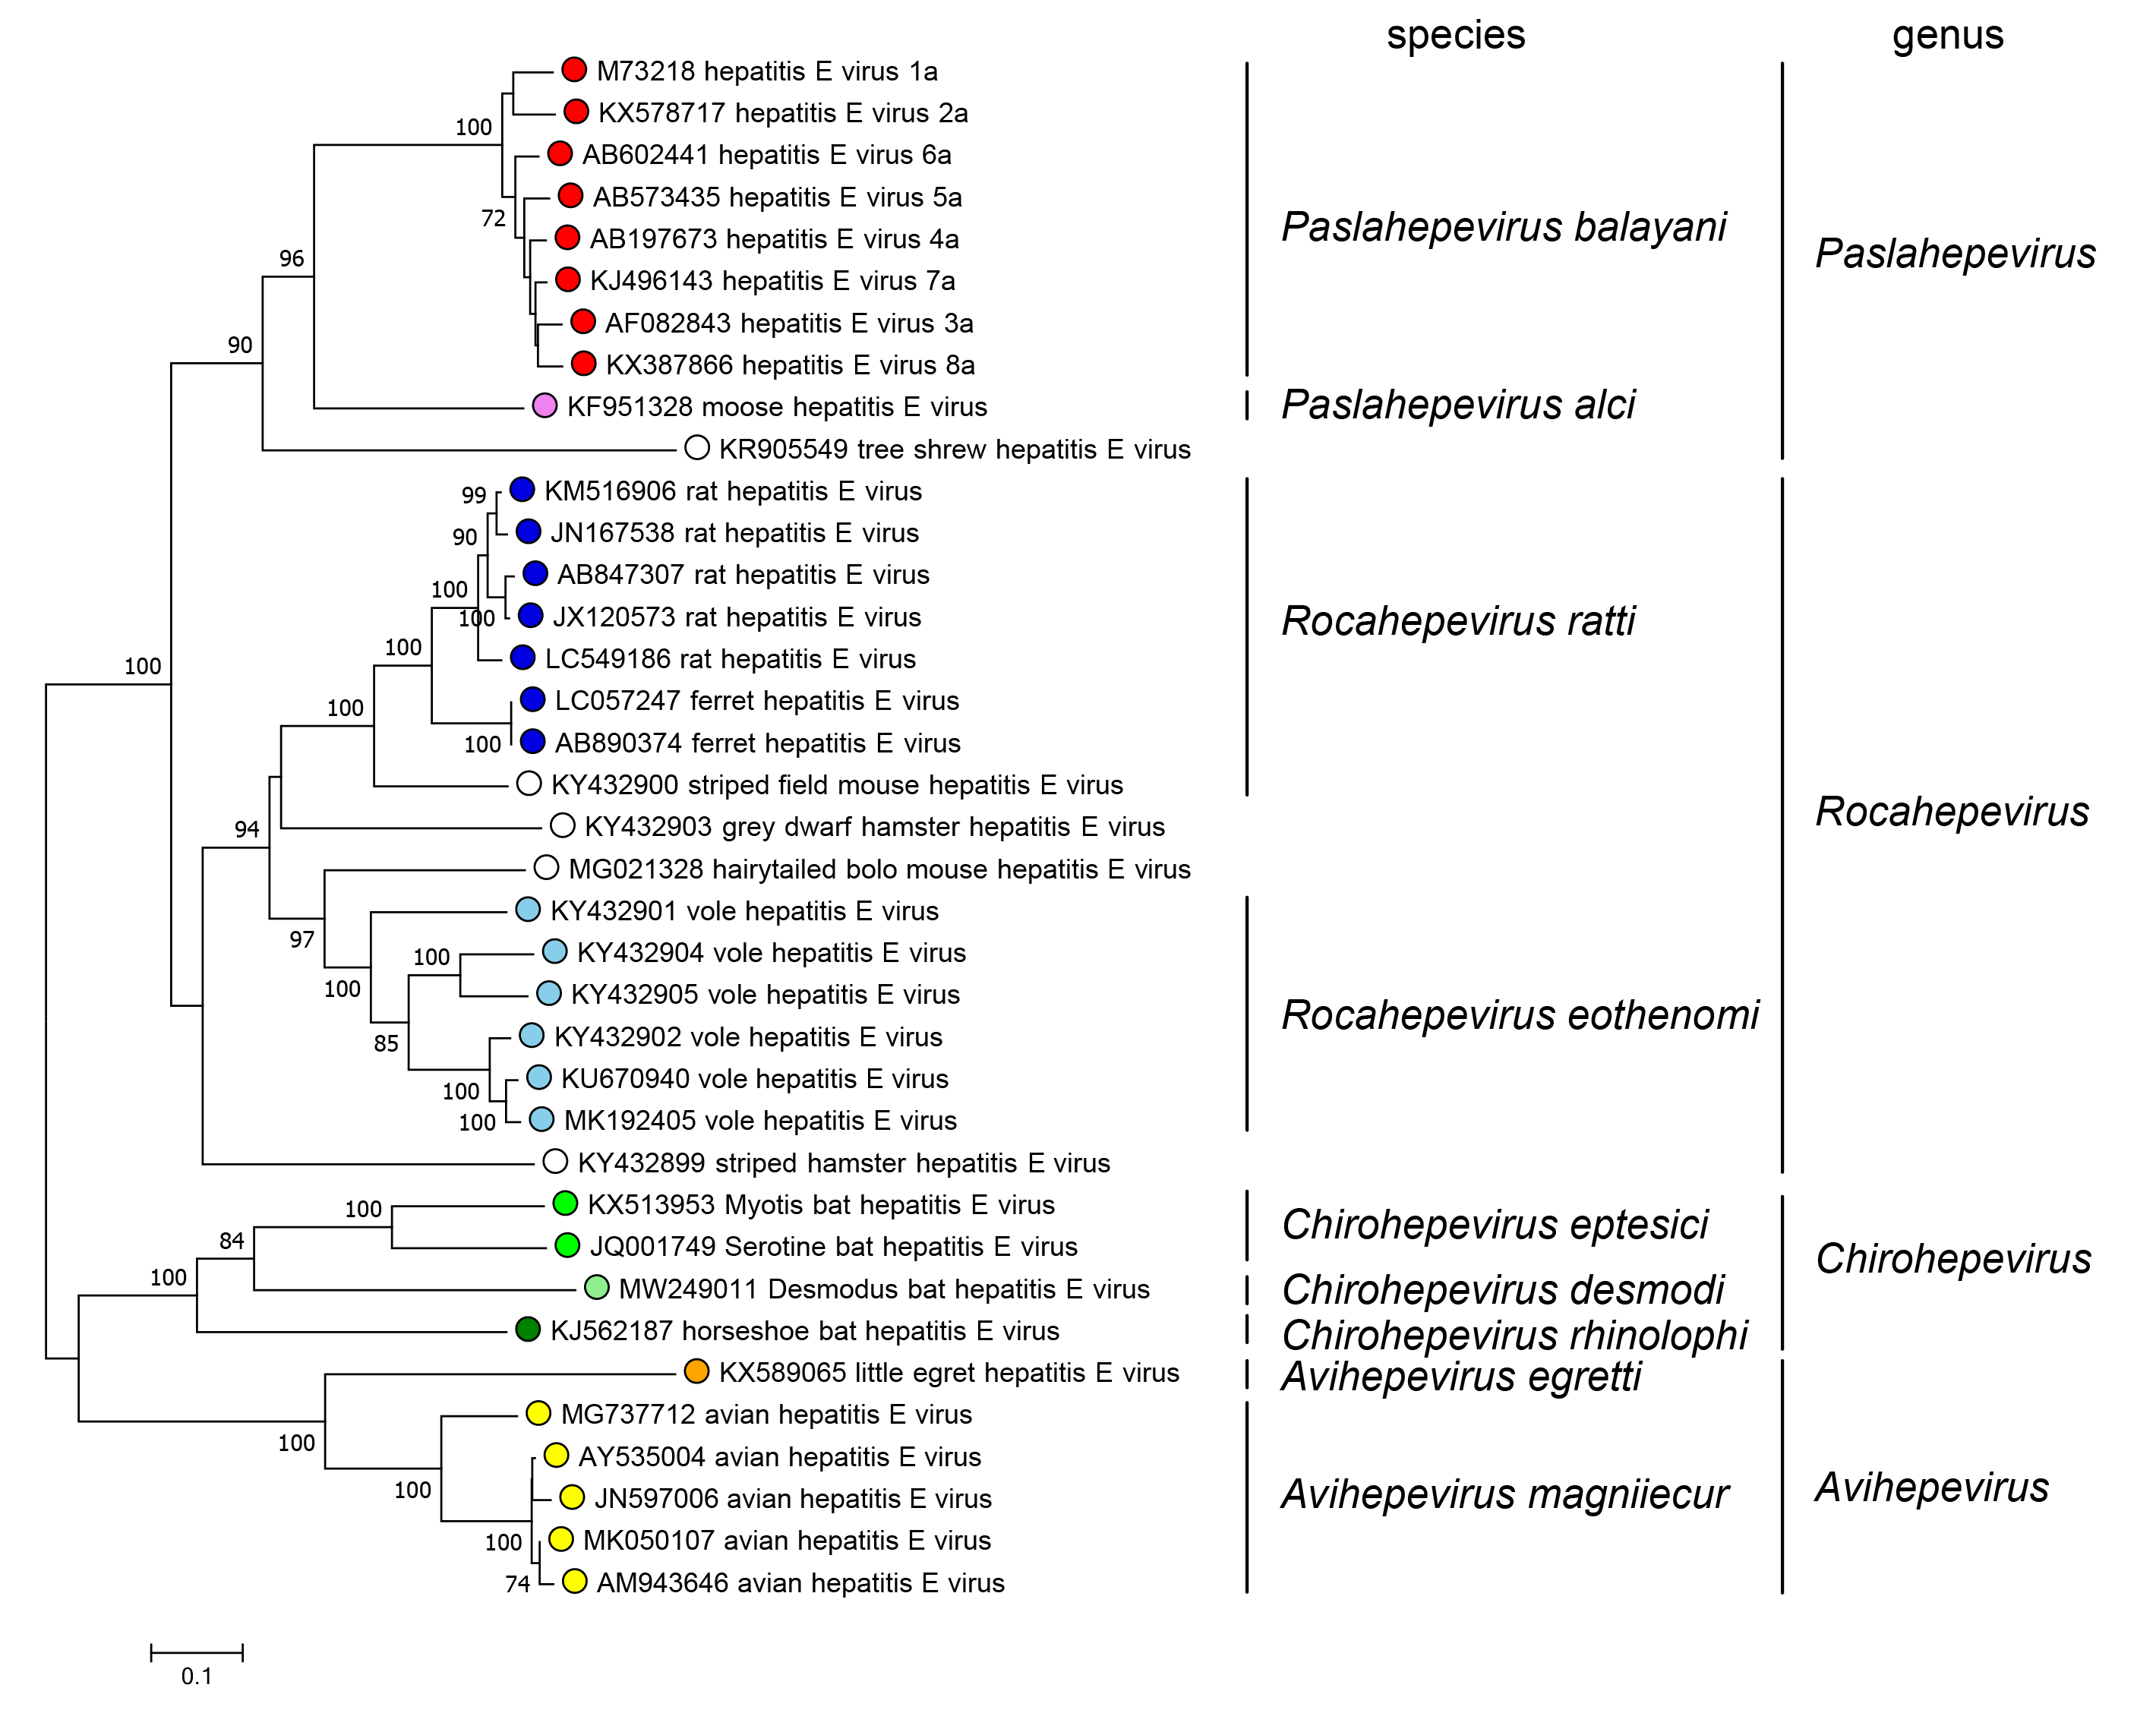 Phylogenetic tree of family Hepeviridae